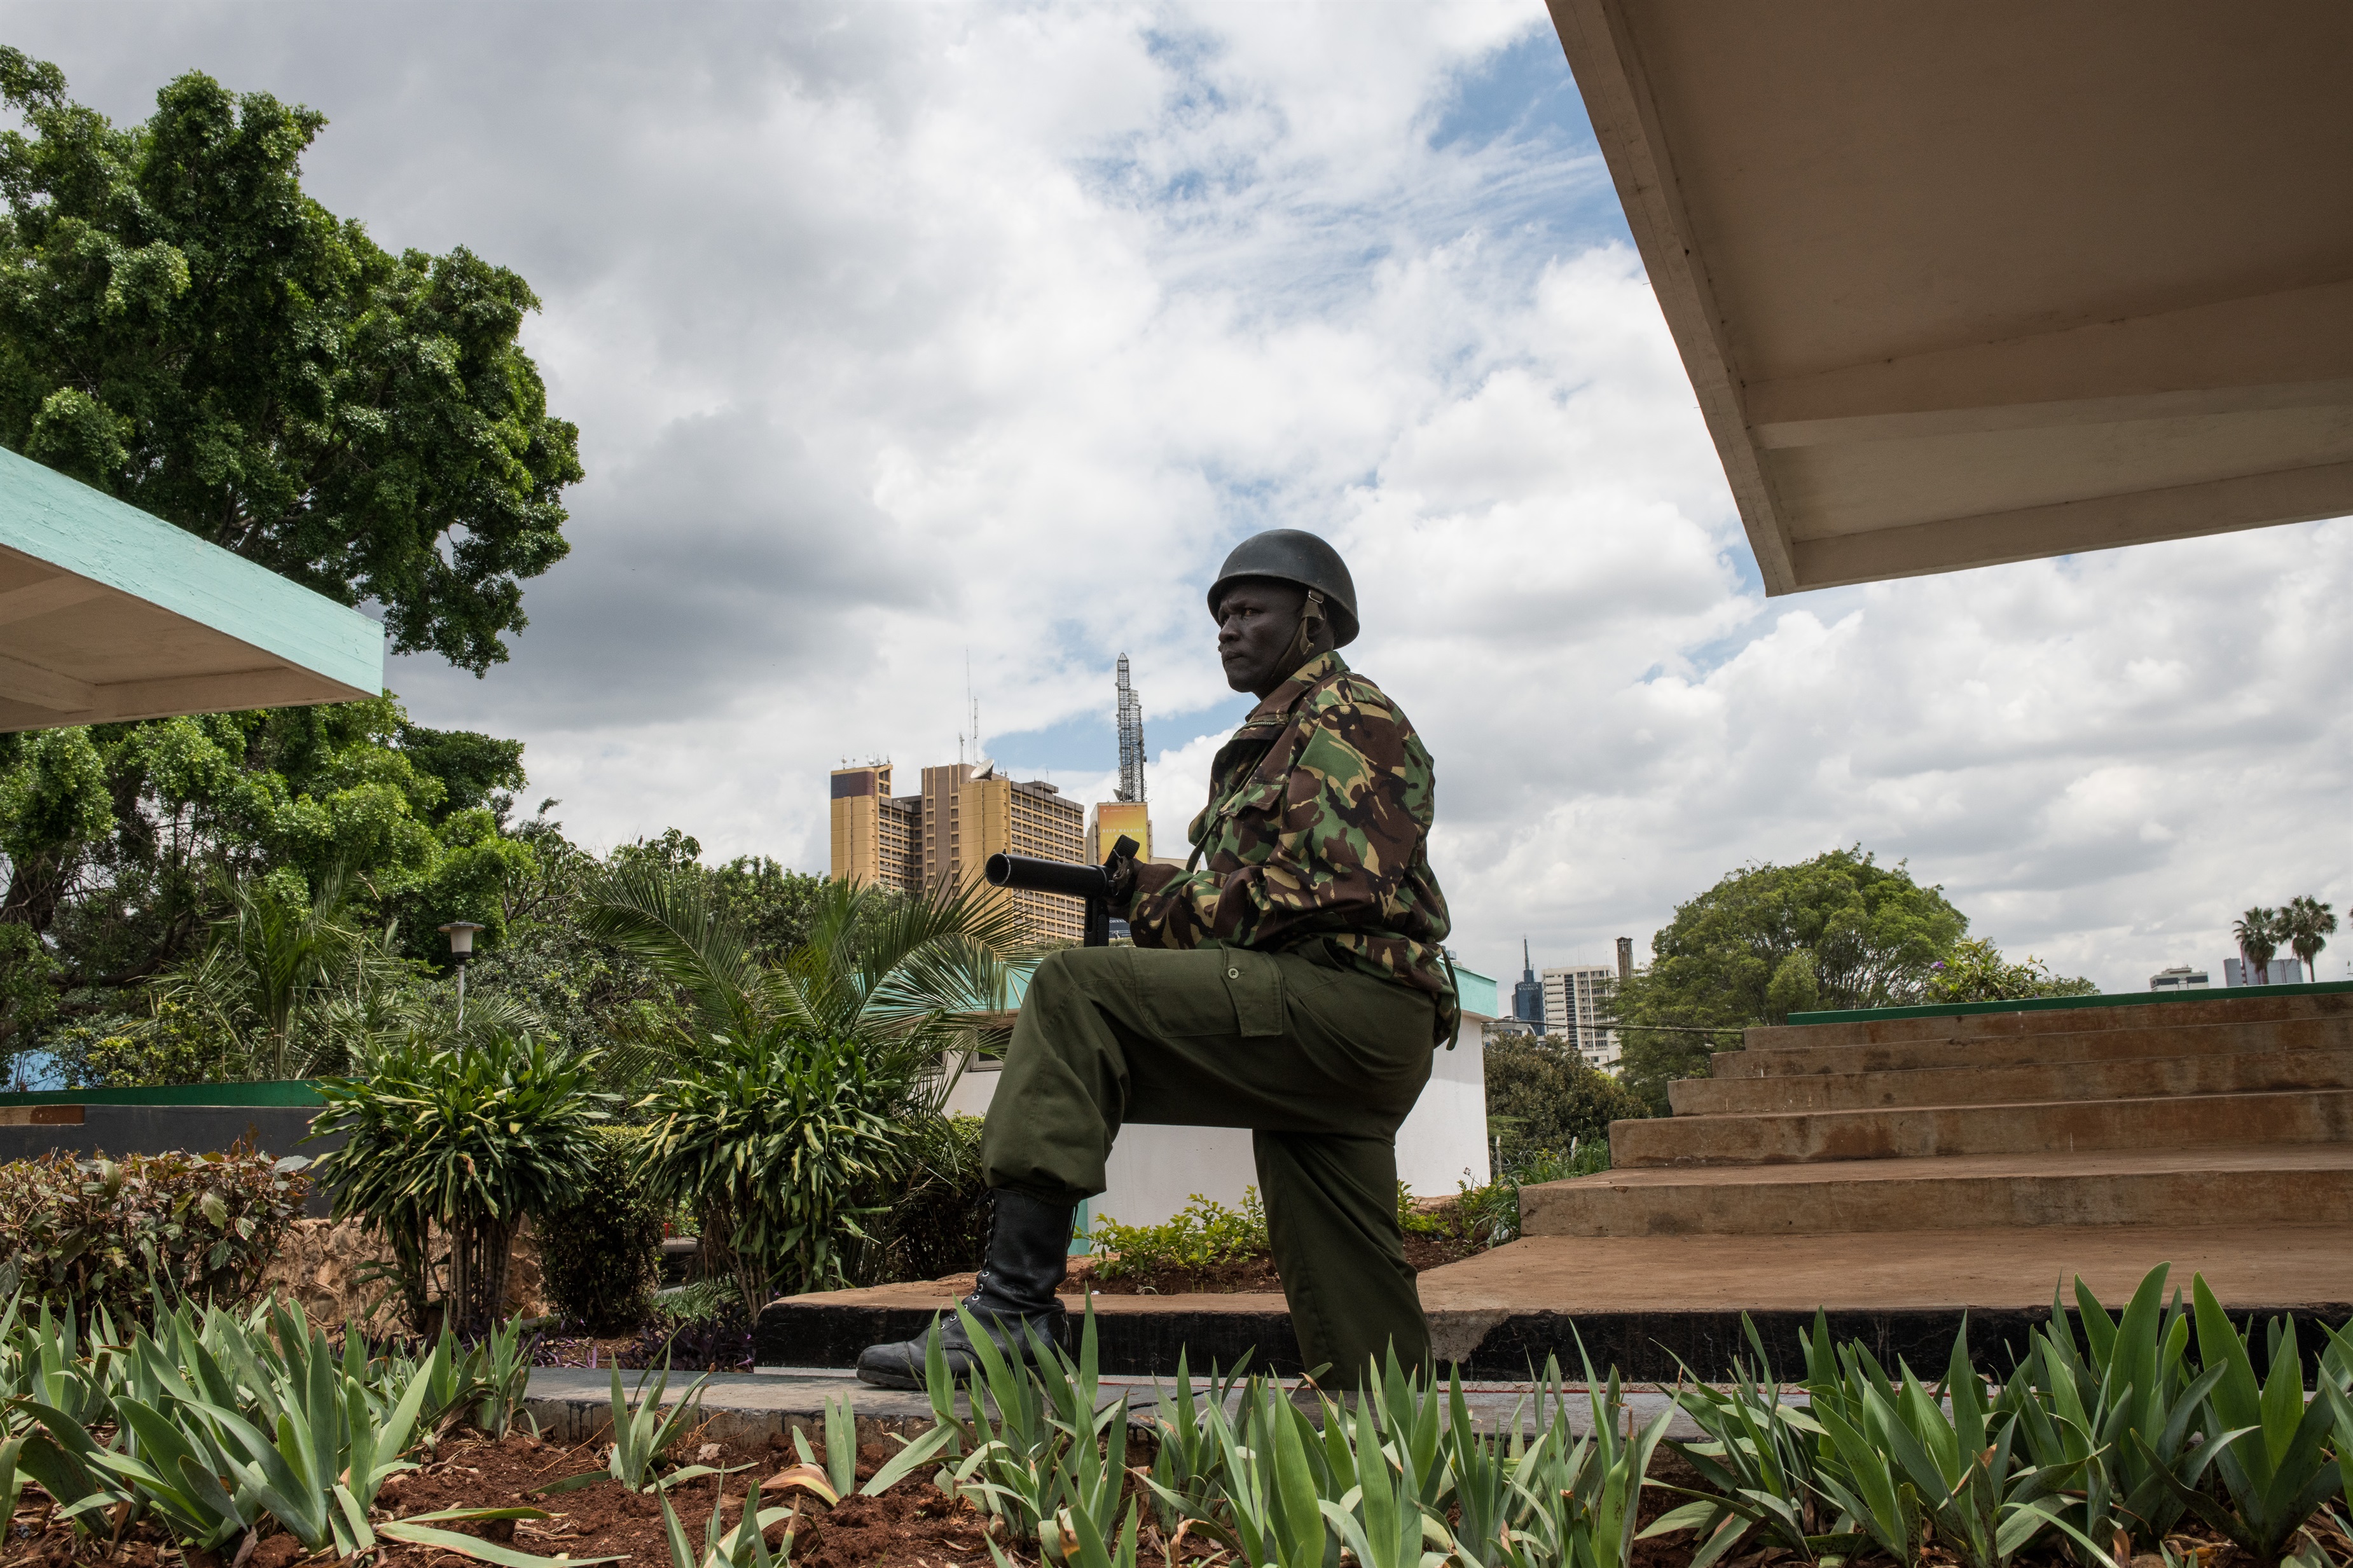 15-10-2021 Un oficial de la Policía de Kenia (imagen de archivo).
POLITICA AFRICA KENIA AFRICA INTERNACIONAL
ANDREW RENNEISEN
